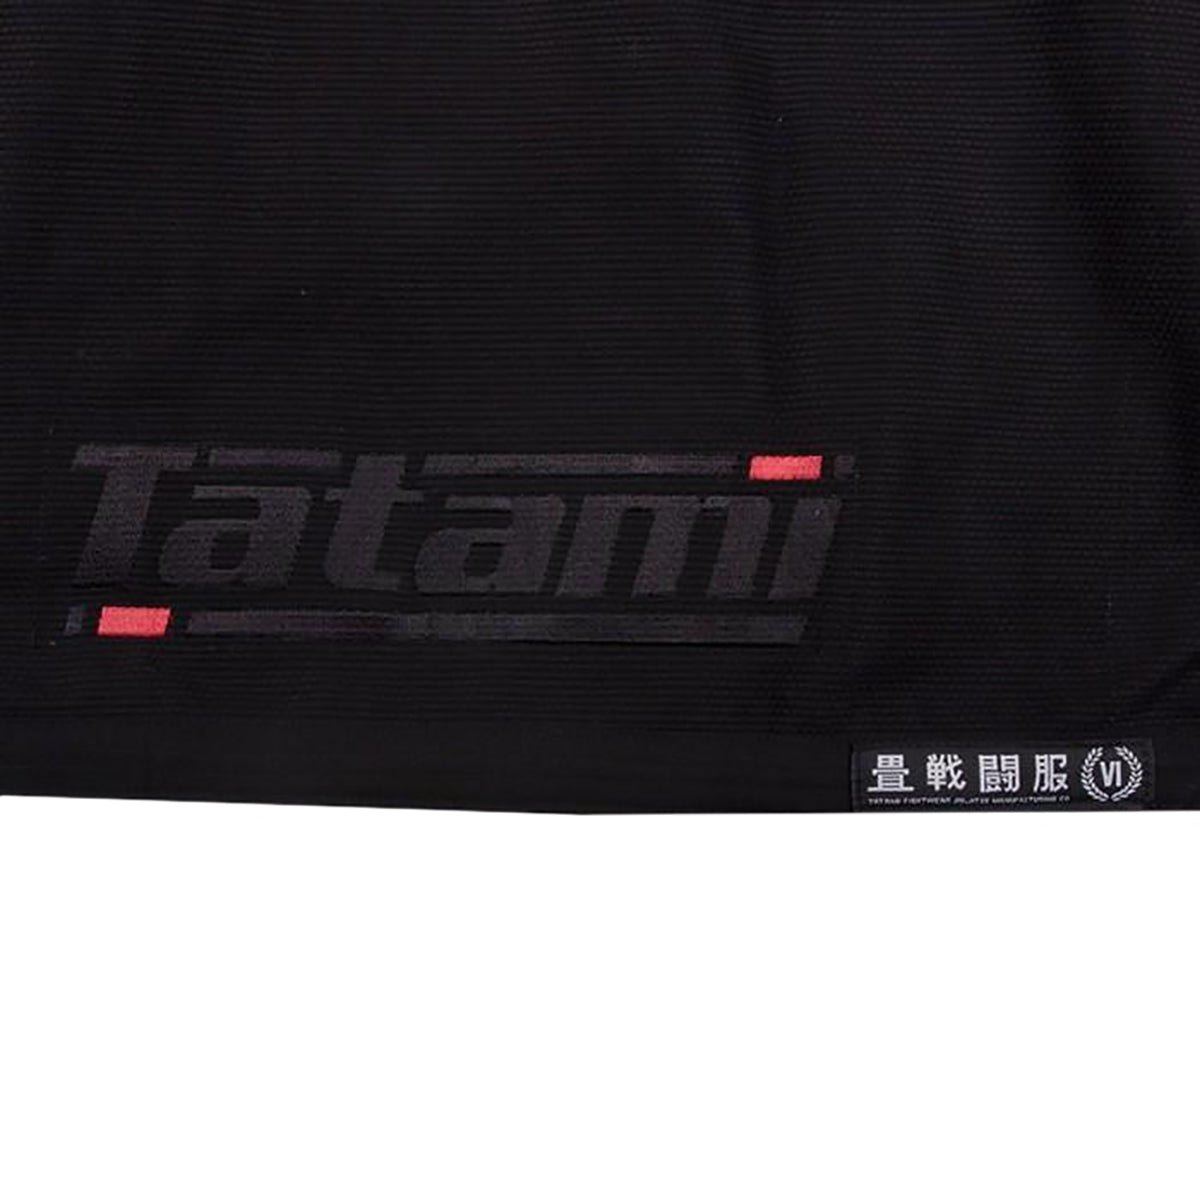 Tatami Fightwear Estilo 6.0 Premium BJJ Gi Tatami Fightwear